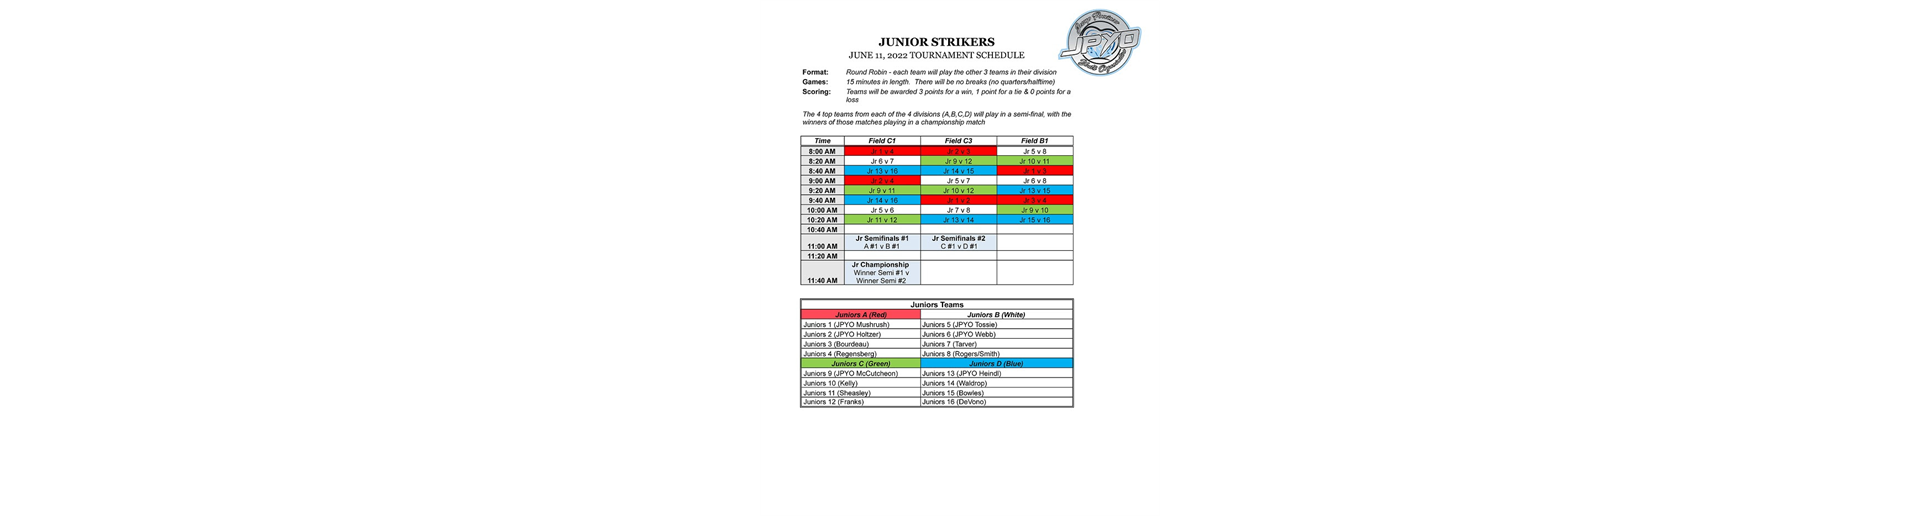 June 11, 2022 Junior Strikers Tournament Schedule